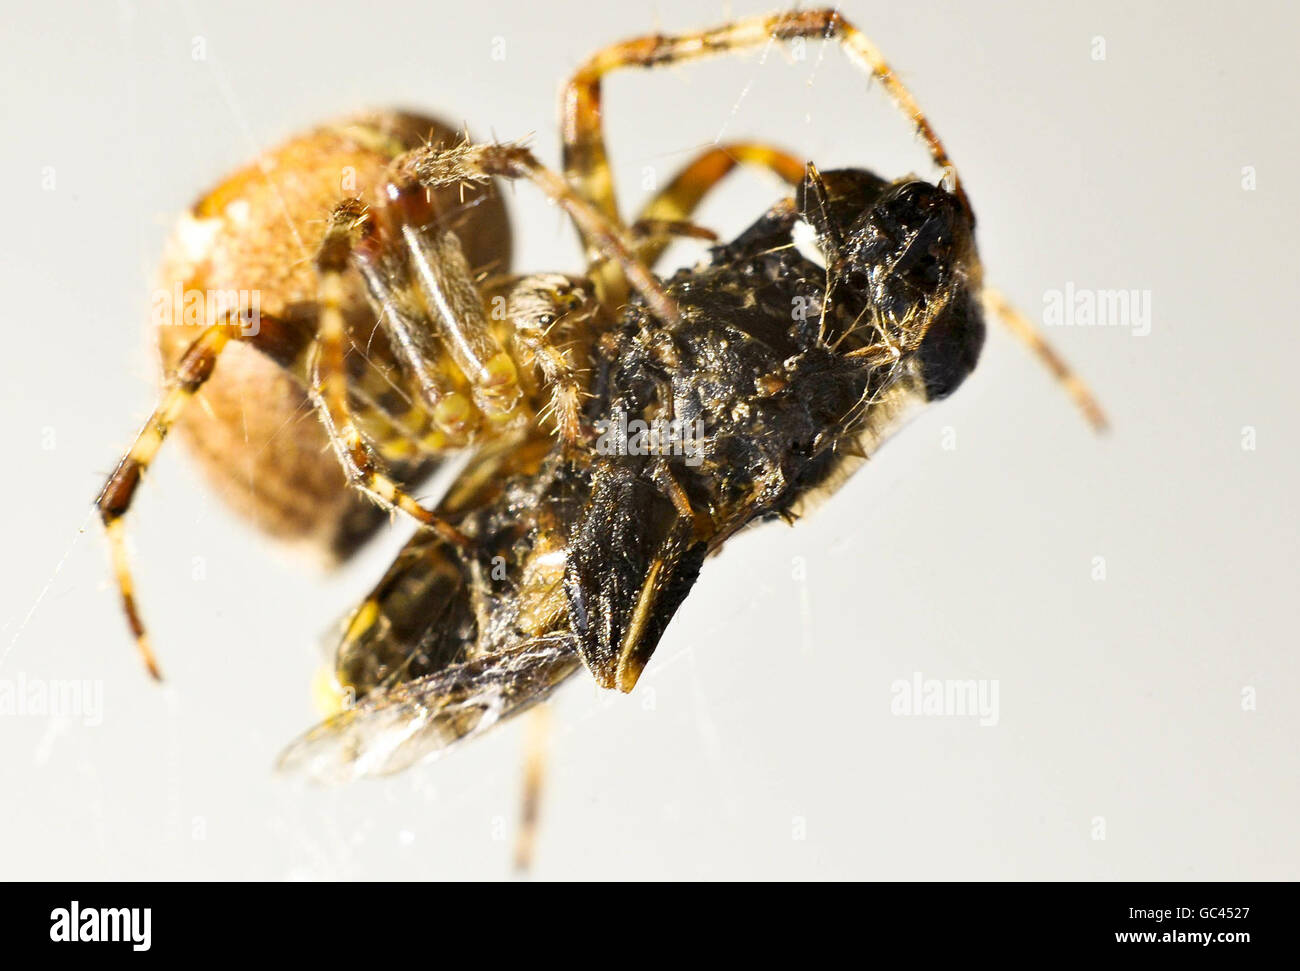 Araignée ORB-weaver.Une araignée Orb-weaver se nourrit d'une mouche stationnaire enveloppée de soie. Banque D'Images